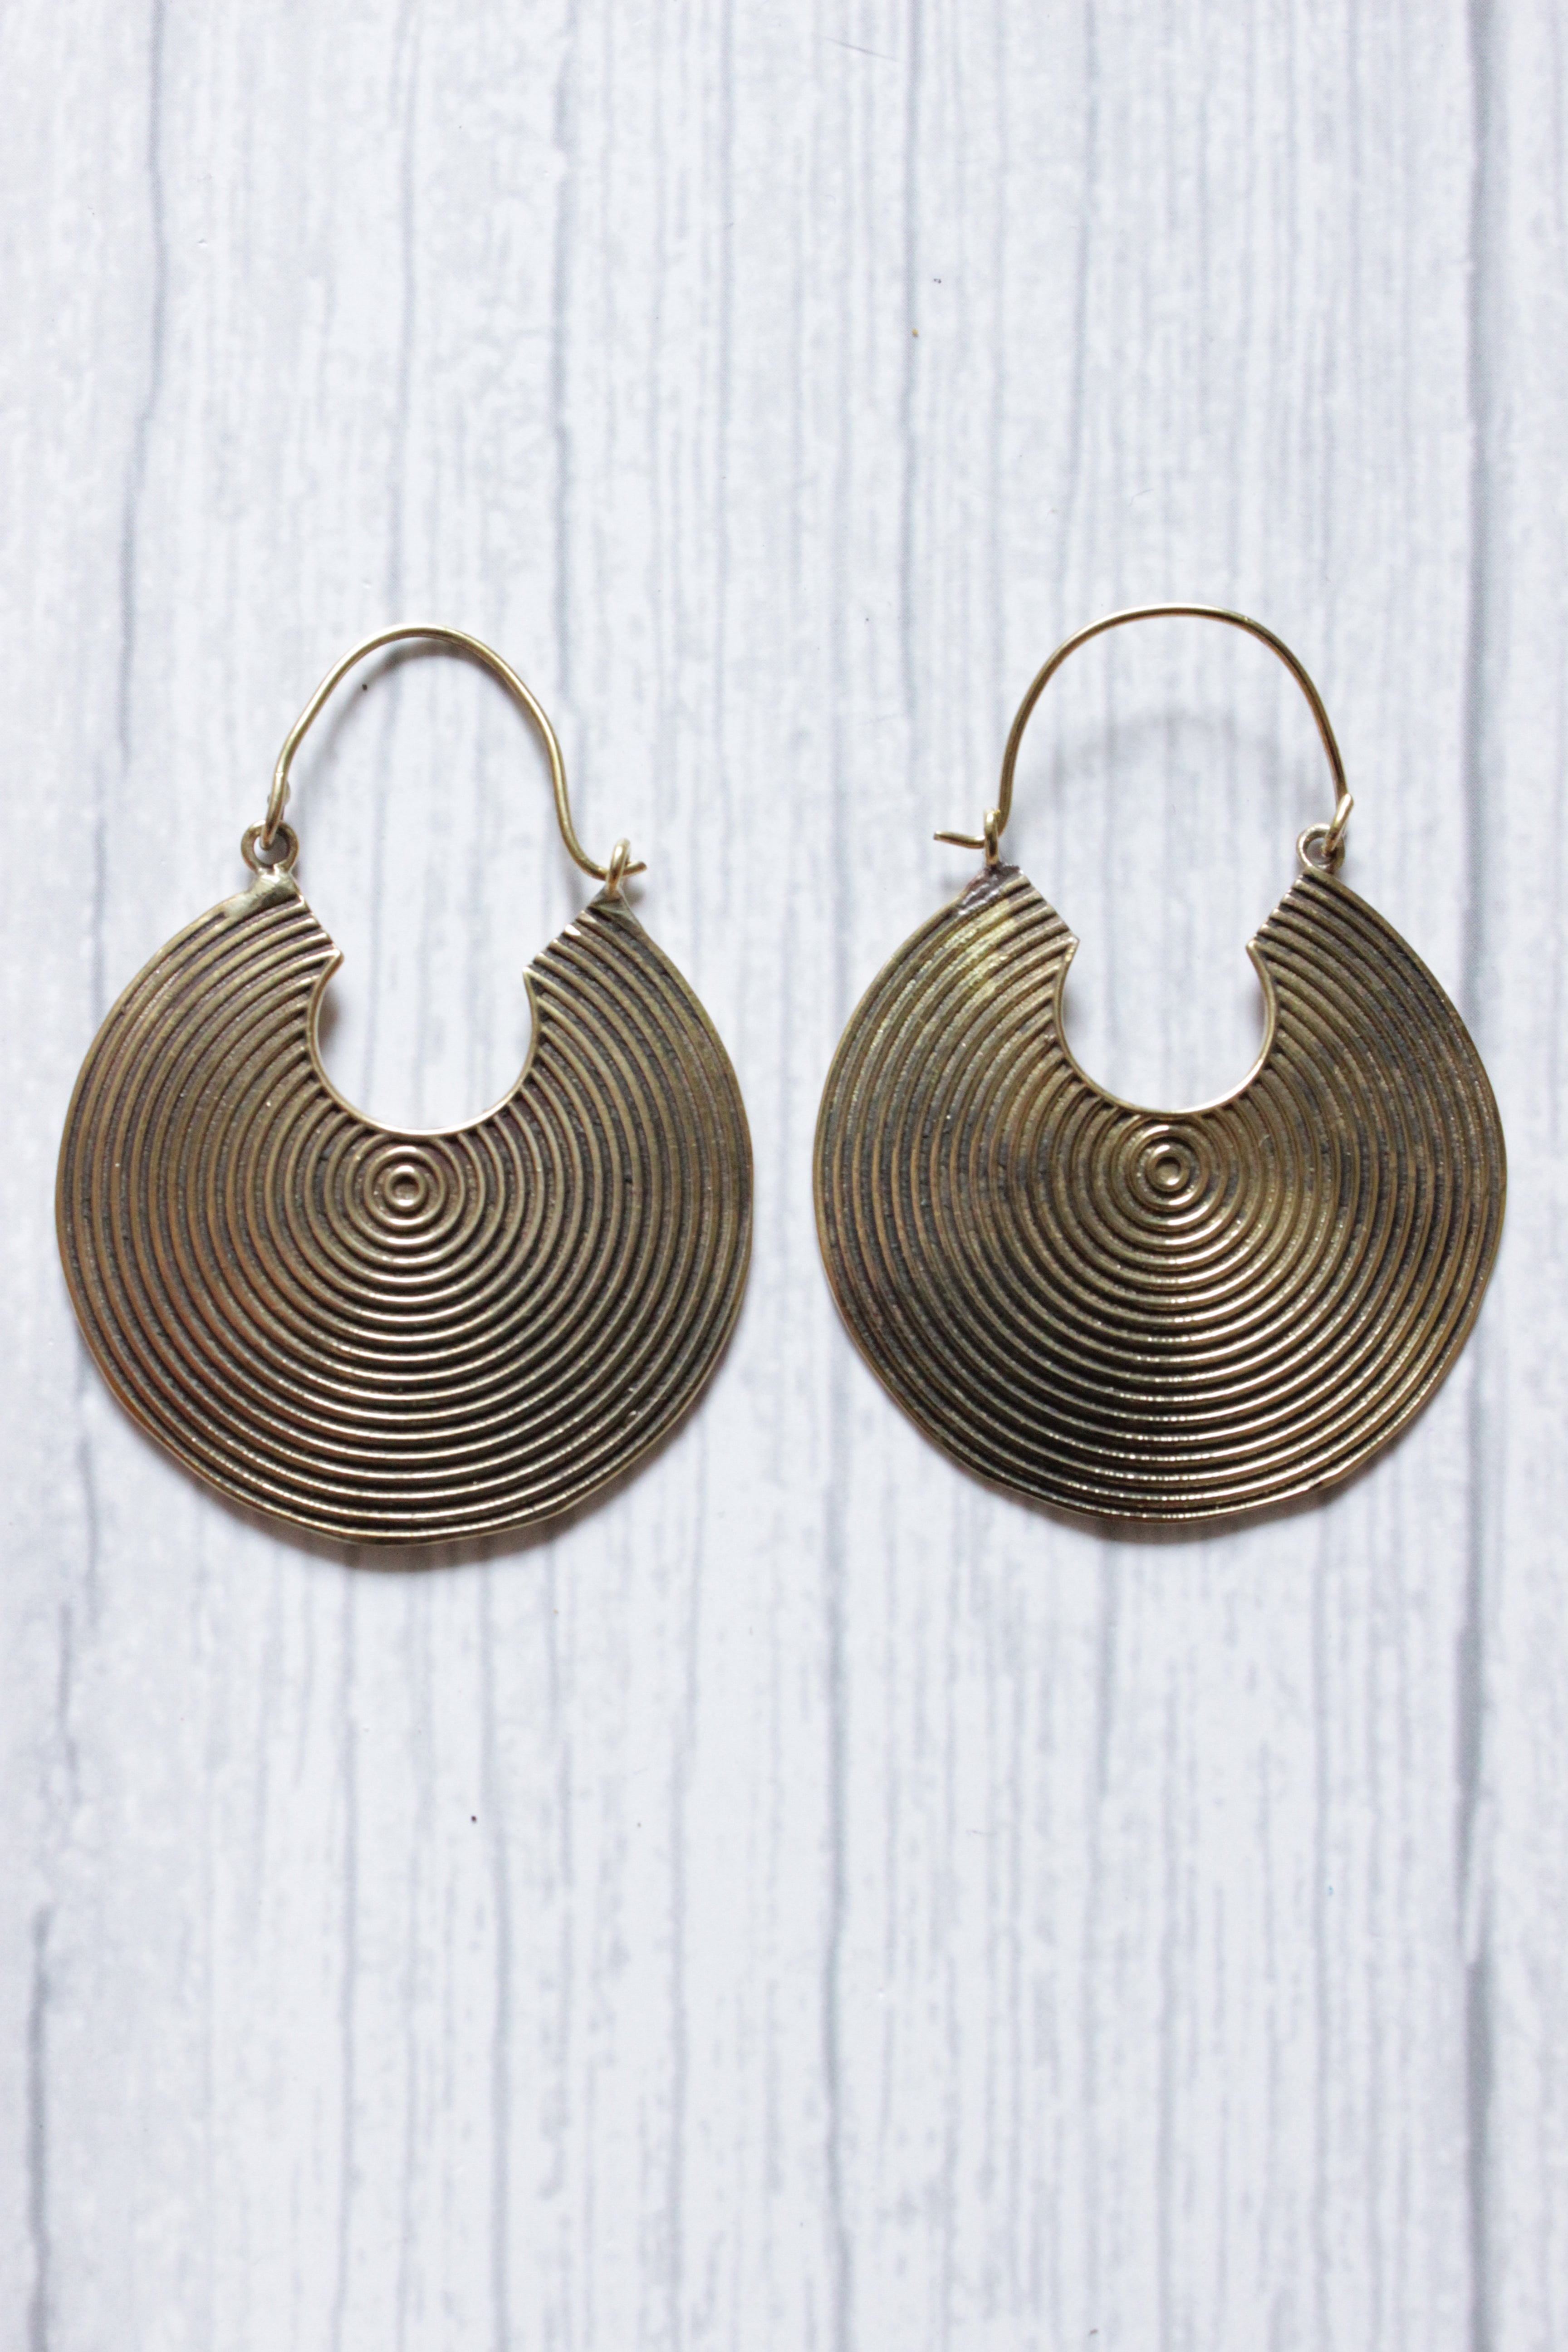 Vintage Brass Spiral Bali Handmade Hoop Earrings